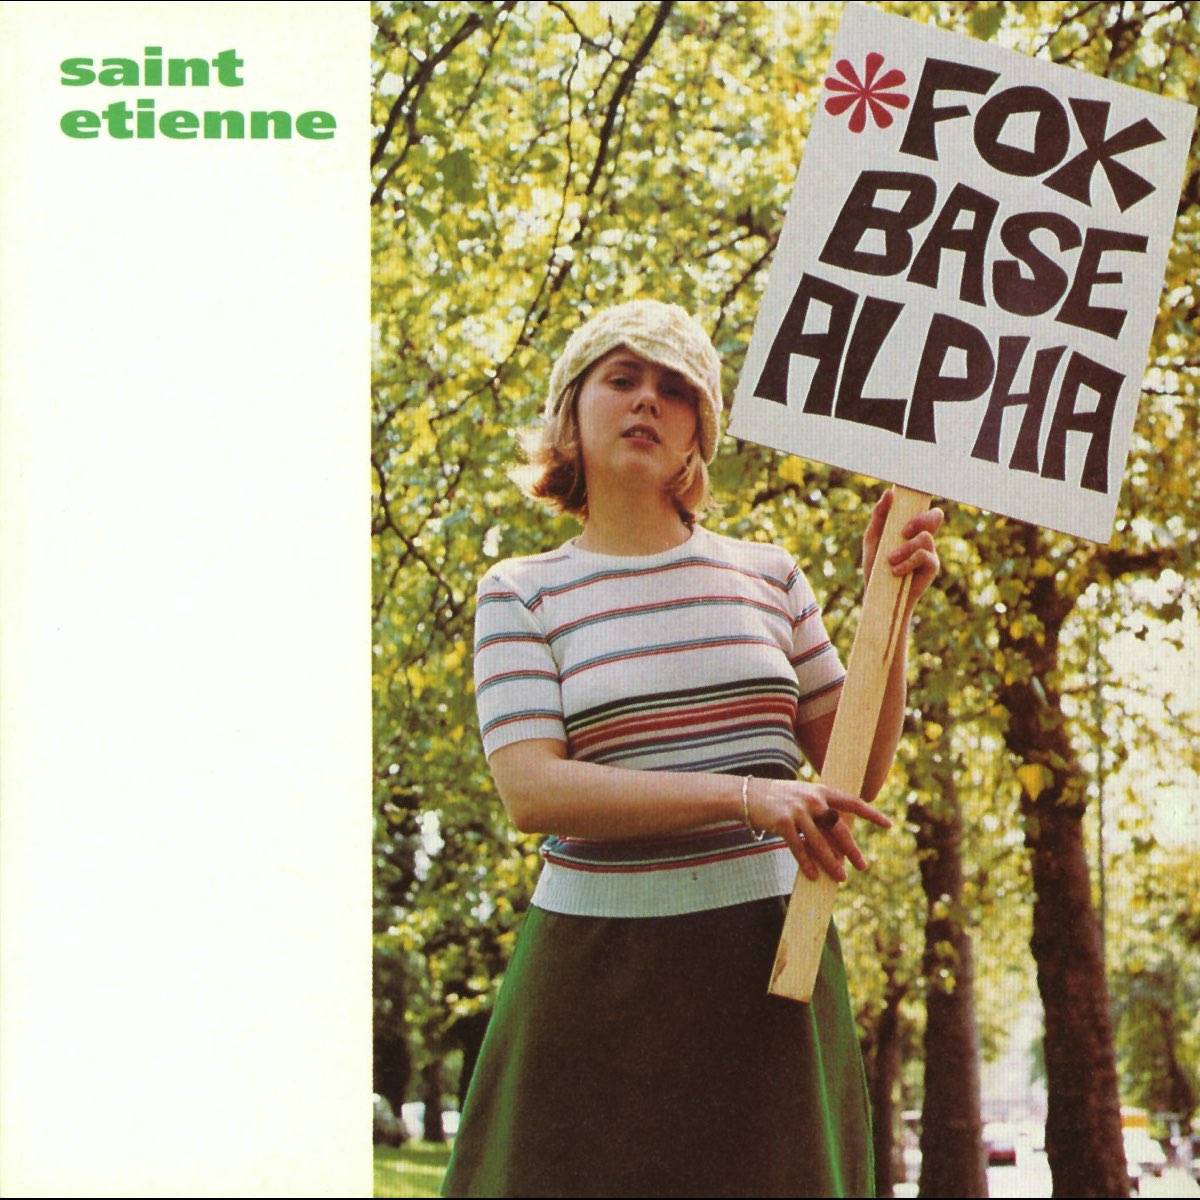 Saint Etienne — Foxbase Alpha cover artwork